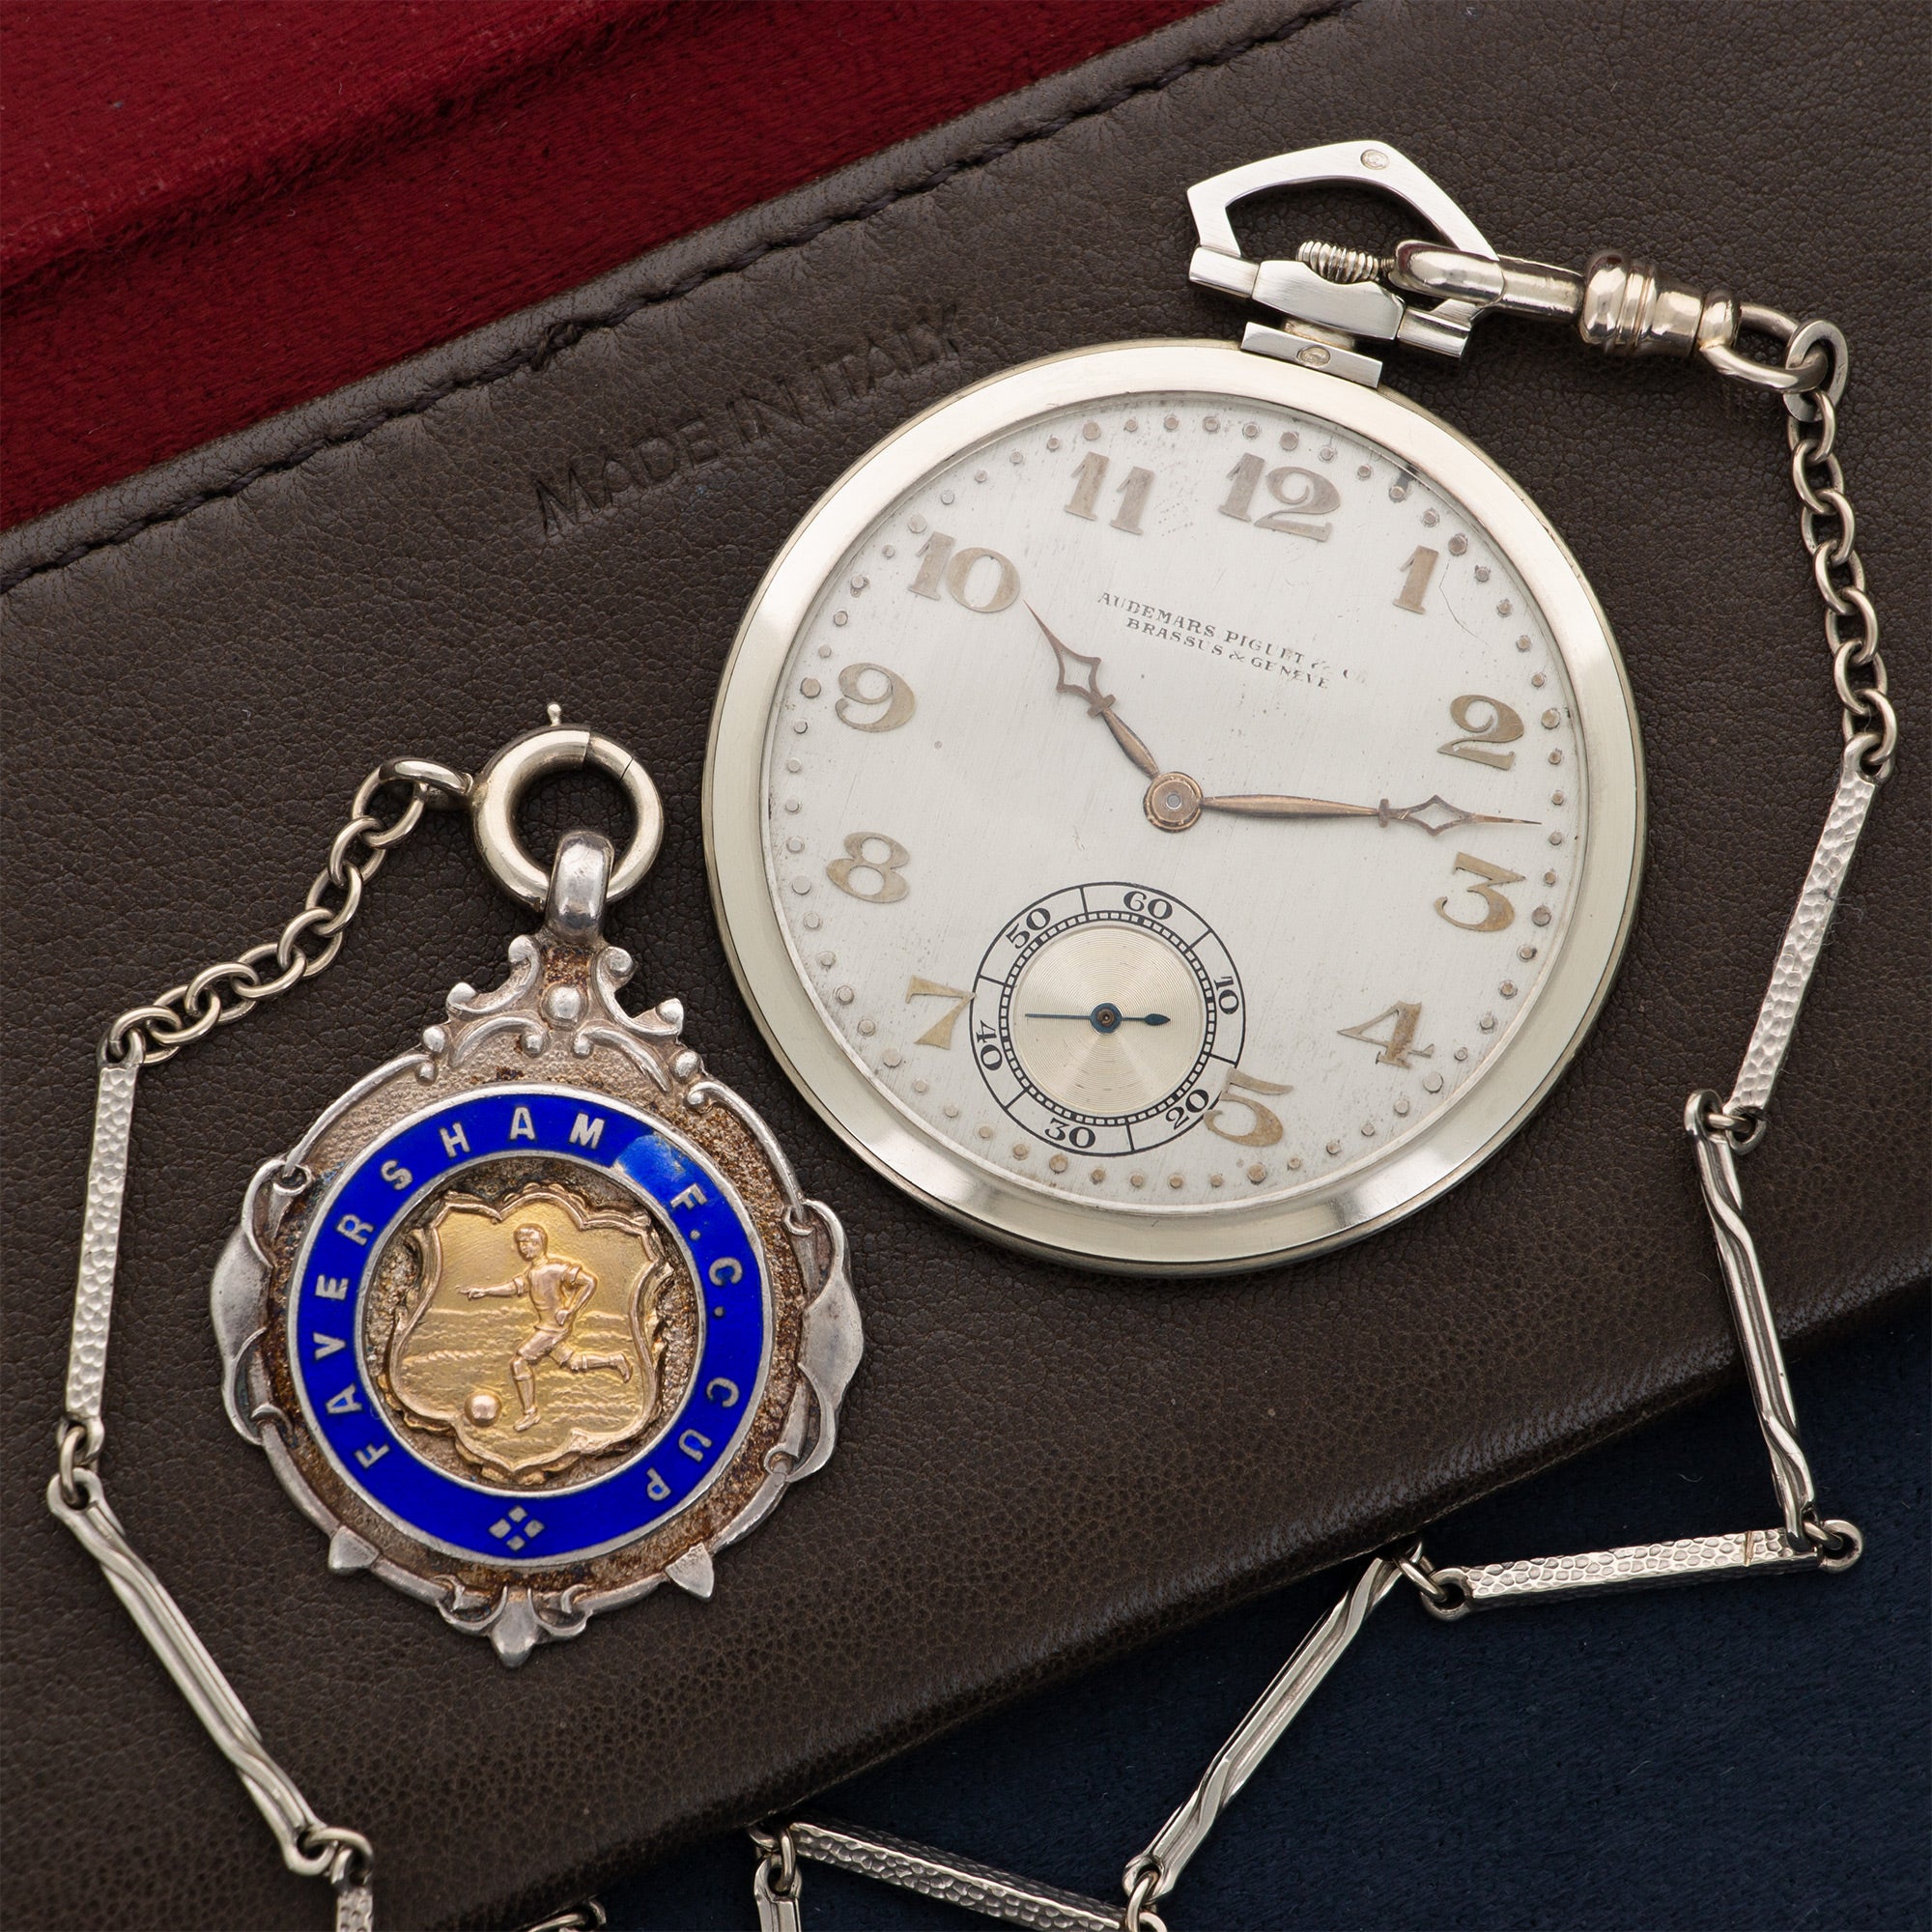 Audemars Piguet - Audemars Piguet White Gold Pocket Watch, with British Soccer Provenance - The Keystone Watches